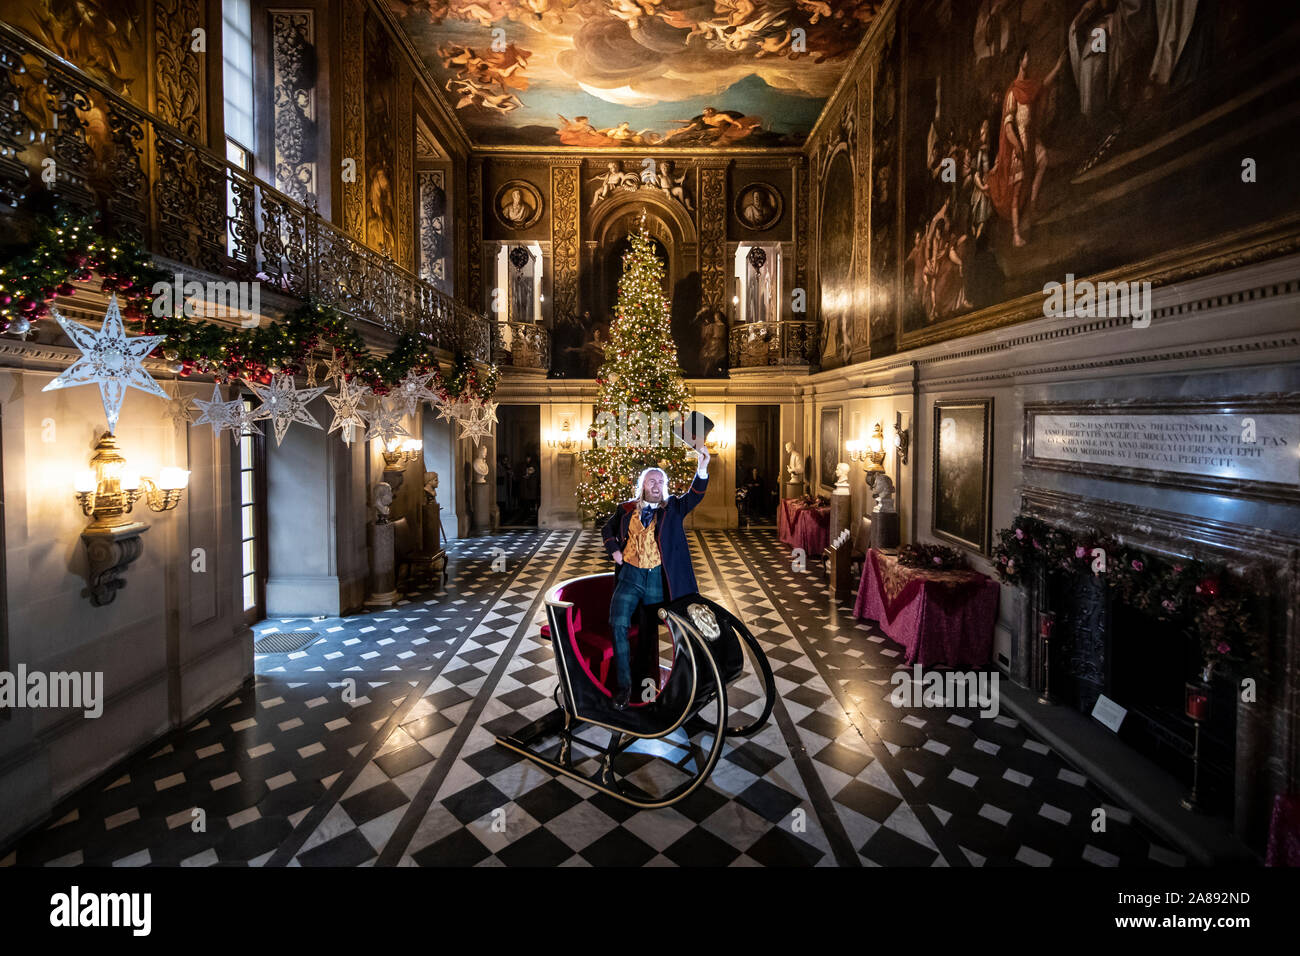 Ben Gilbert gekleidet, wie die Romanfigur Phileas Fogg während der Produkteinführung der in einem Land, Weit Weit Weg, Teil der Weihnachten celebraitions in Chatsworth House in der Nähe von Bakewell. Stockfoto